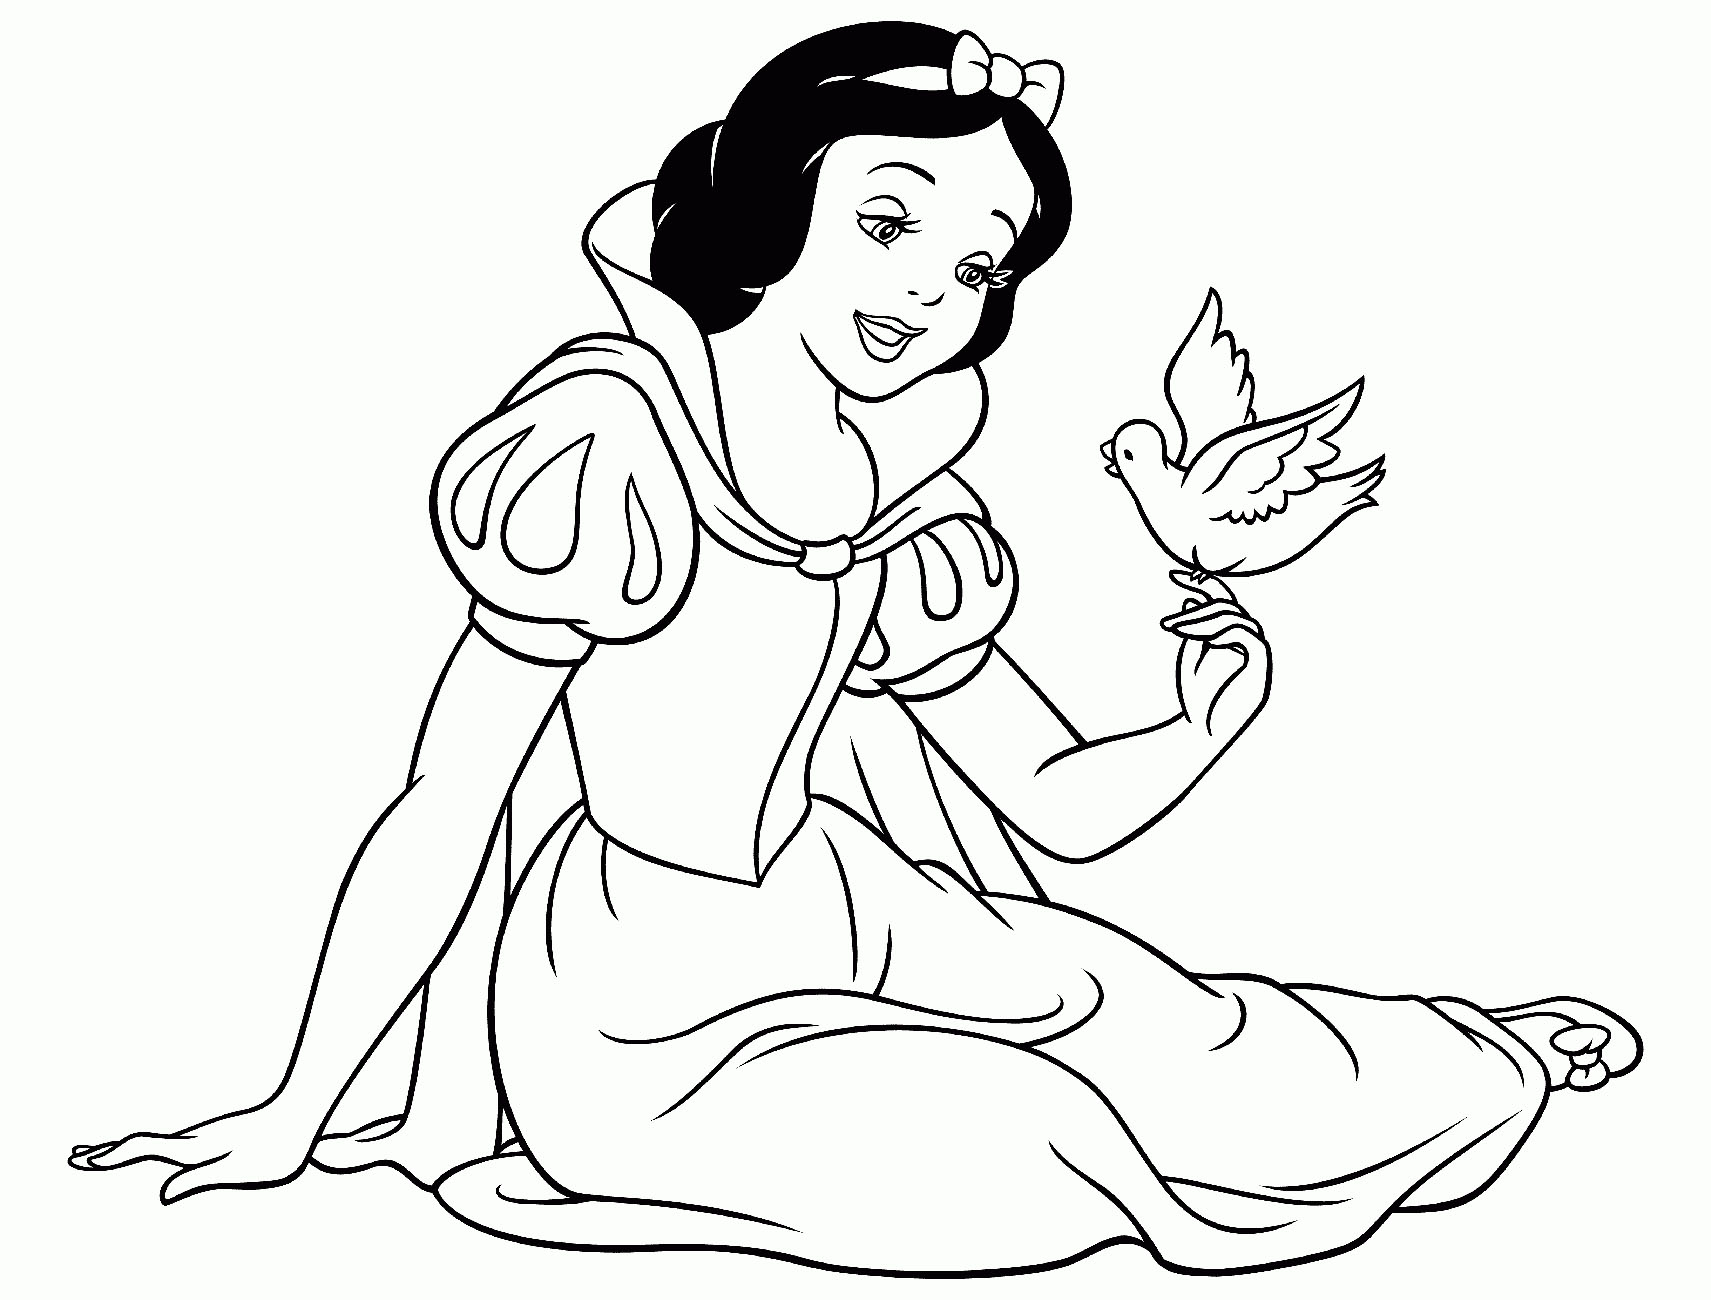 Tổng hợp các bức tranh tô màu công chúa Bạch Tuyết đẹp nhất - Zicxa Photos  | Disney princess coloring pages, Free disney coloring pages, Princess  coloring pages